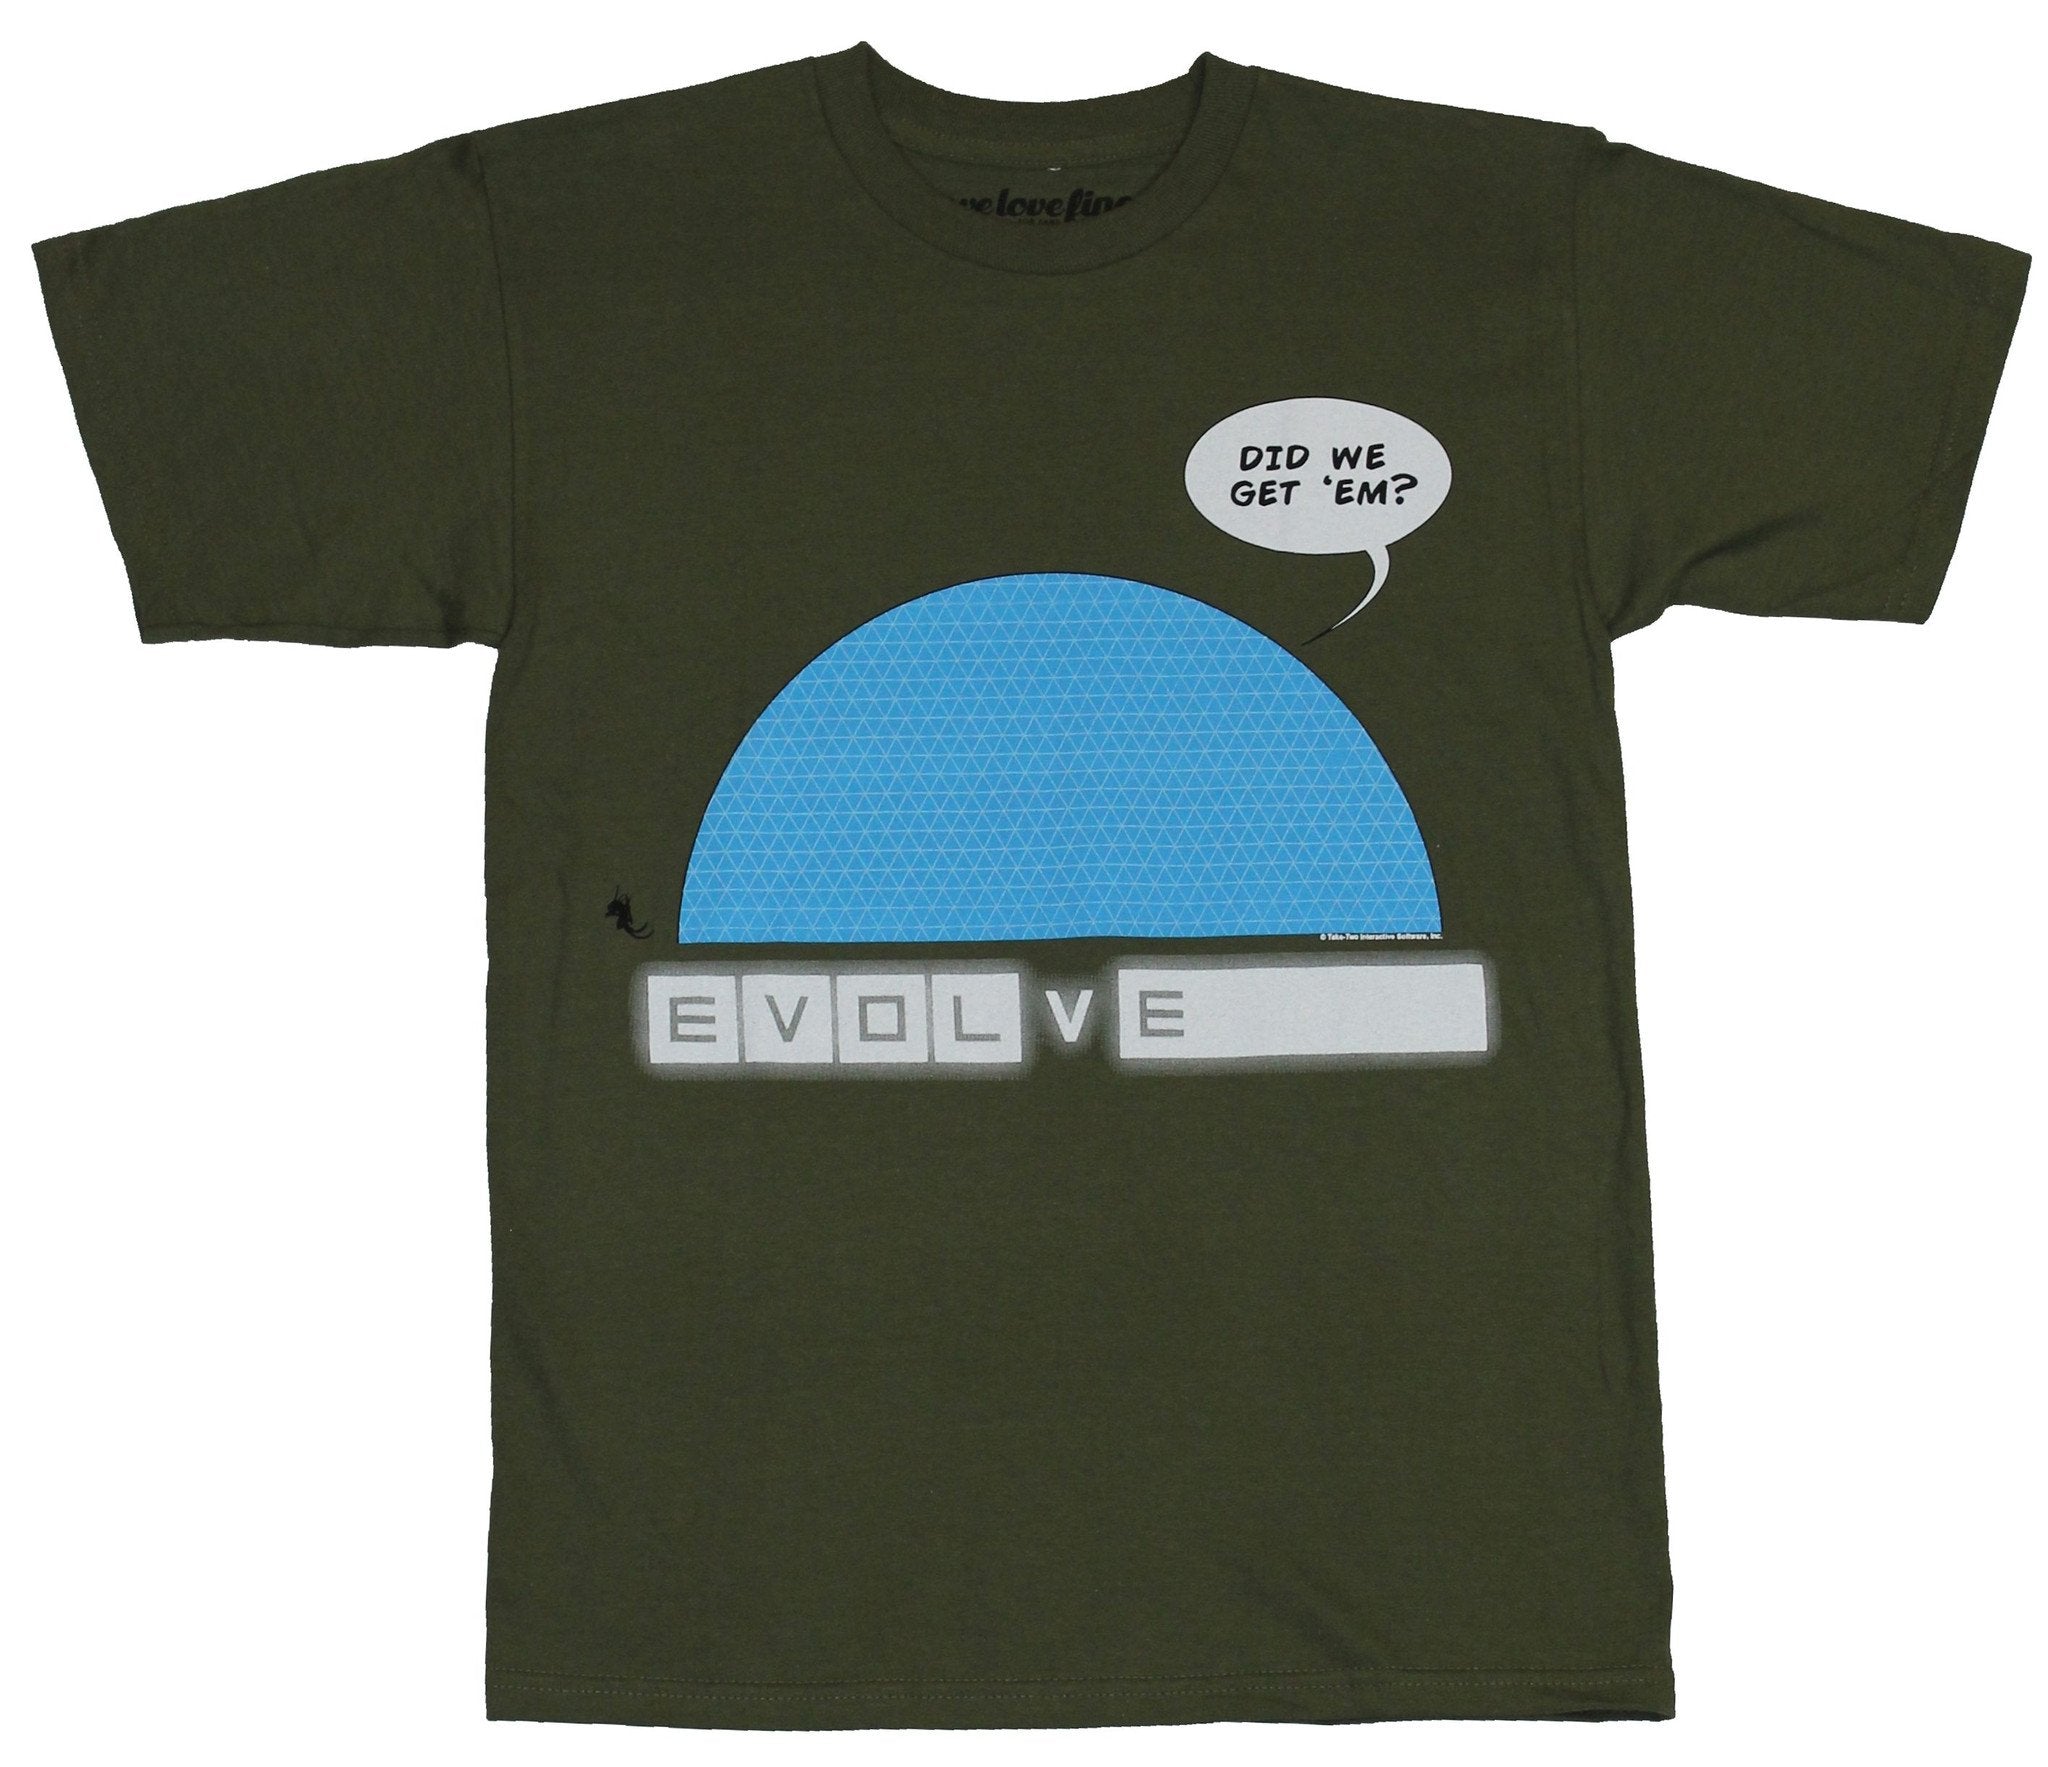 Evolve Mens T-Shirt - Did We Get Em Blue DoomImage